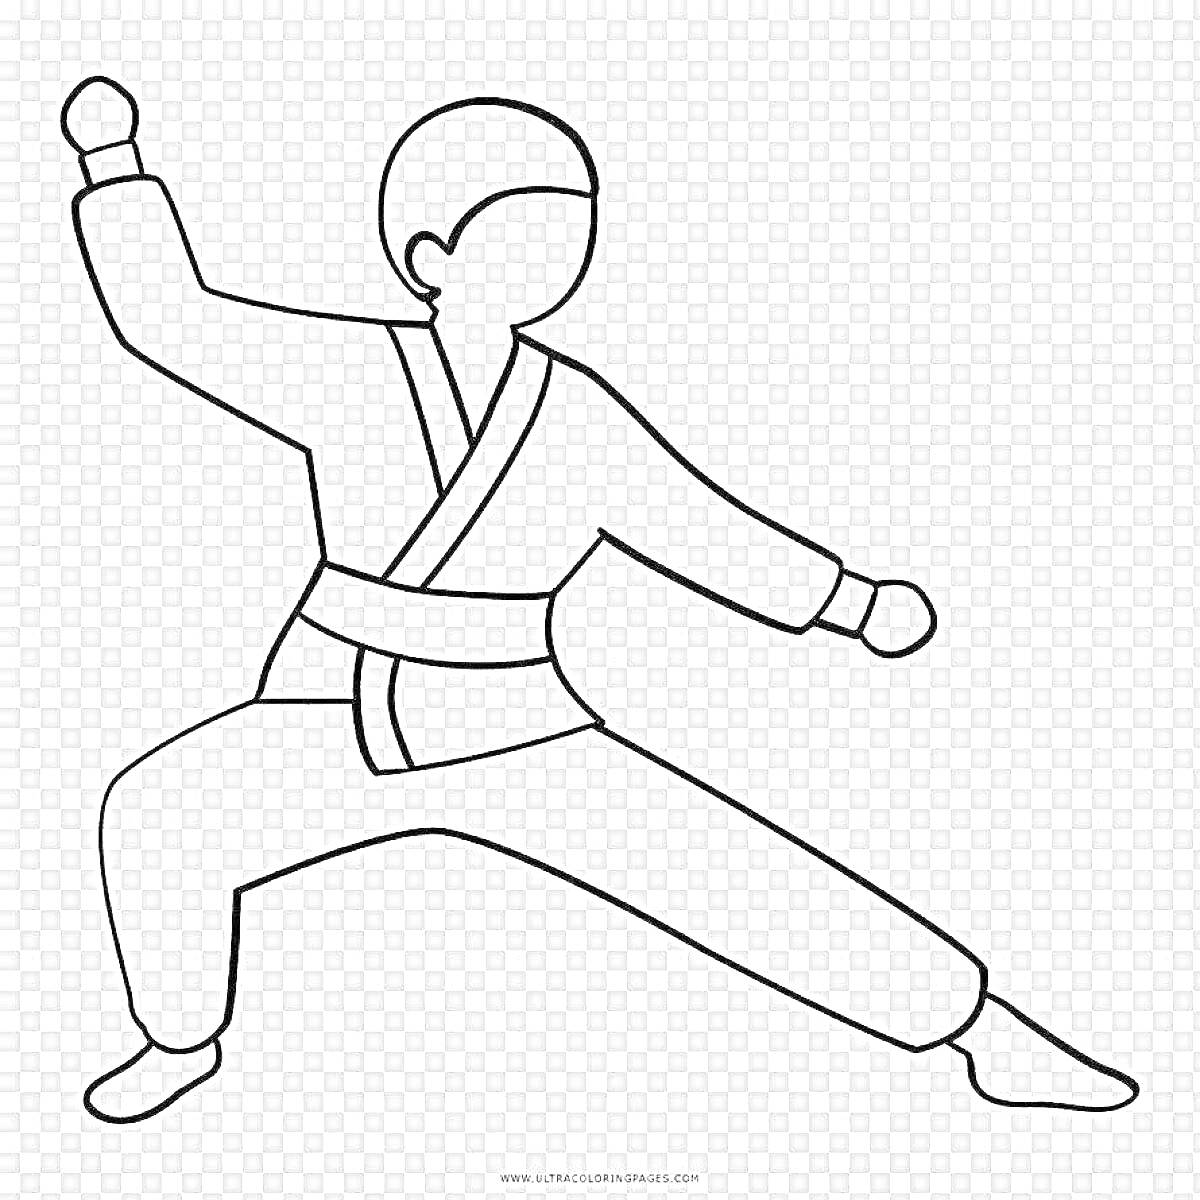 РаскраскаДзюдоист в атакующей стойке с поднятой рукой и согнутыми ногами